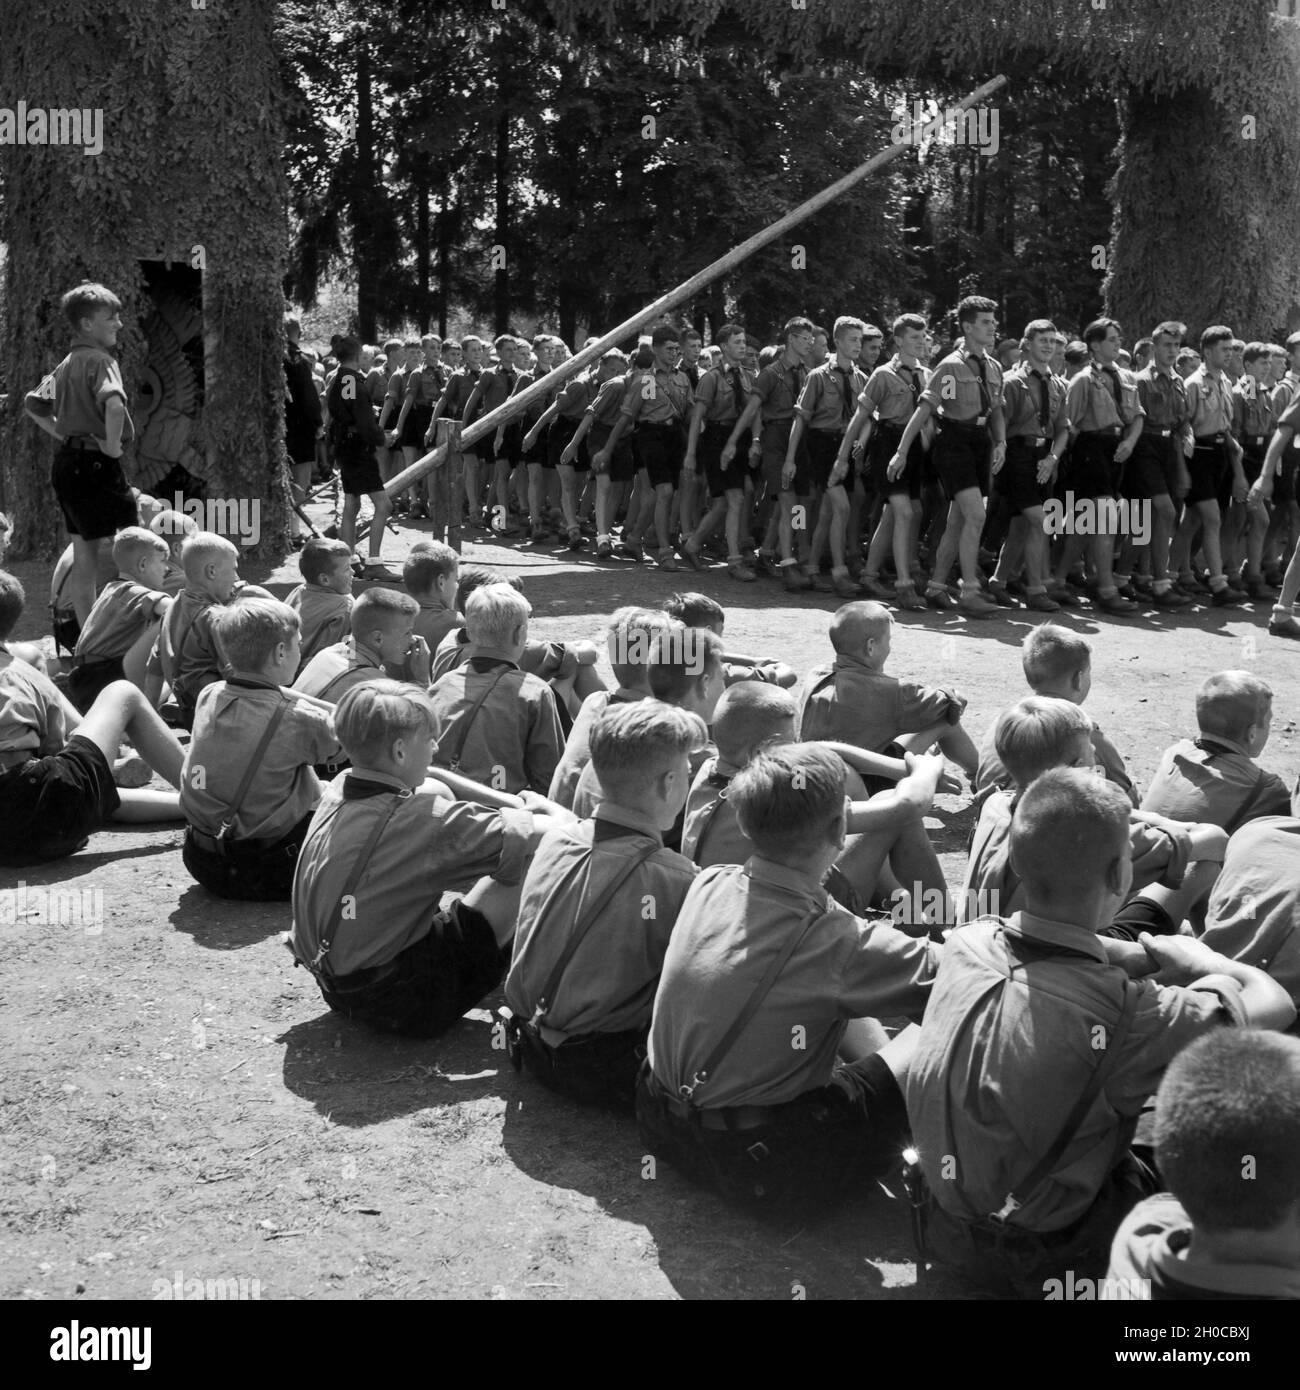 Stolz schauen sich Pimpfe des Jungvolks den Einmarsch der größeren Hitlerjungen ins Hitlerjugend Lager an, Österreich 1930er Jahre. Proudly the recruits, called 'Pimpfe', watch the elder Hitler youths marching in to the Hitler youth camp, Austria 1930s. Stock Photo